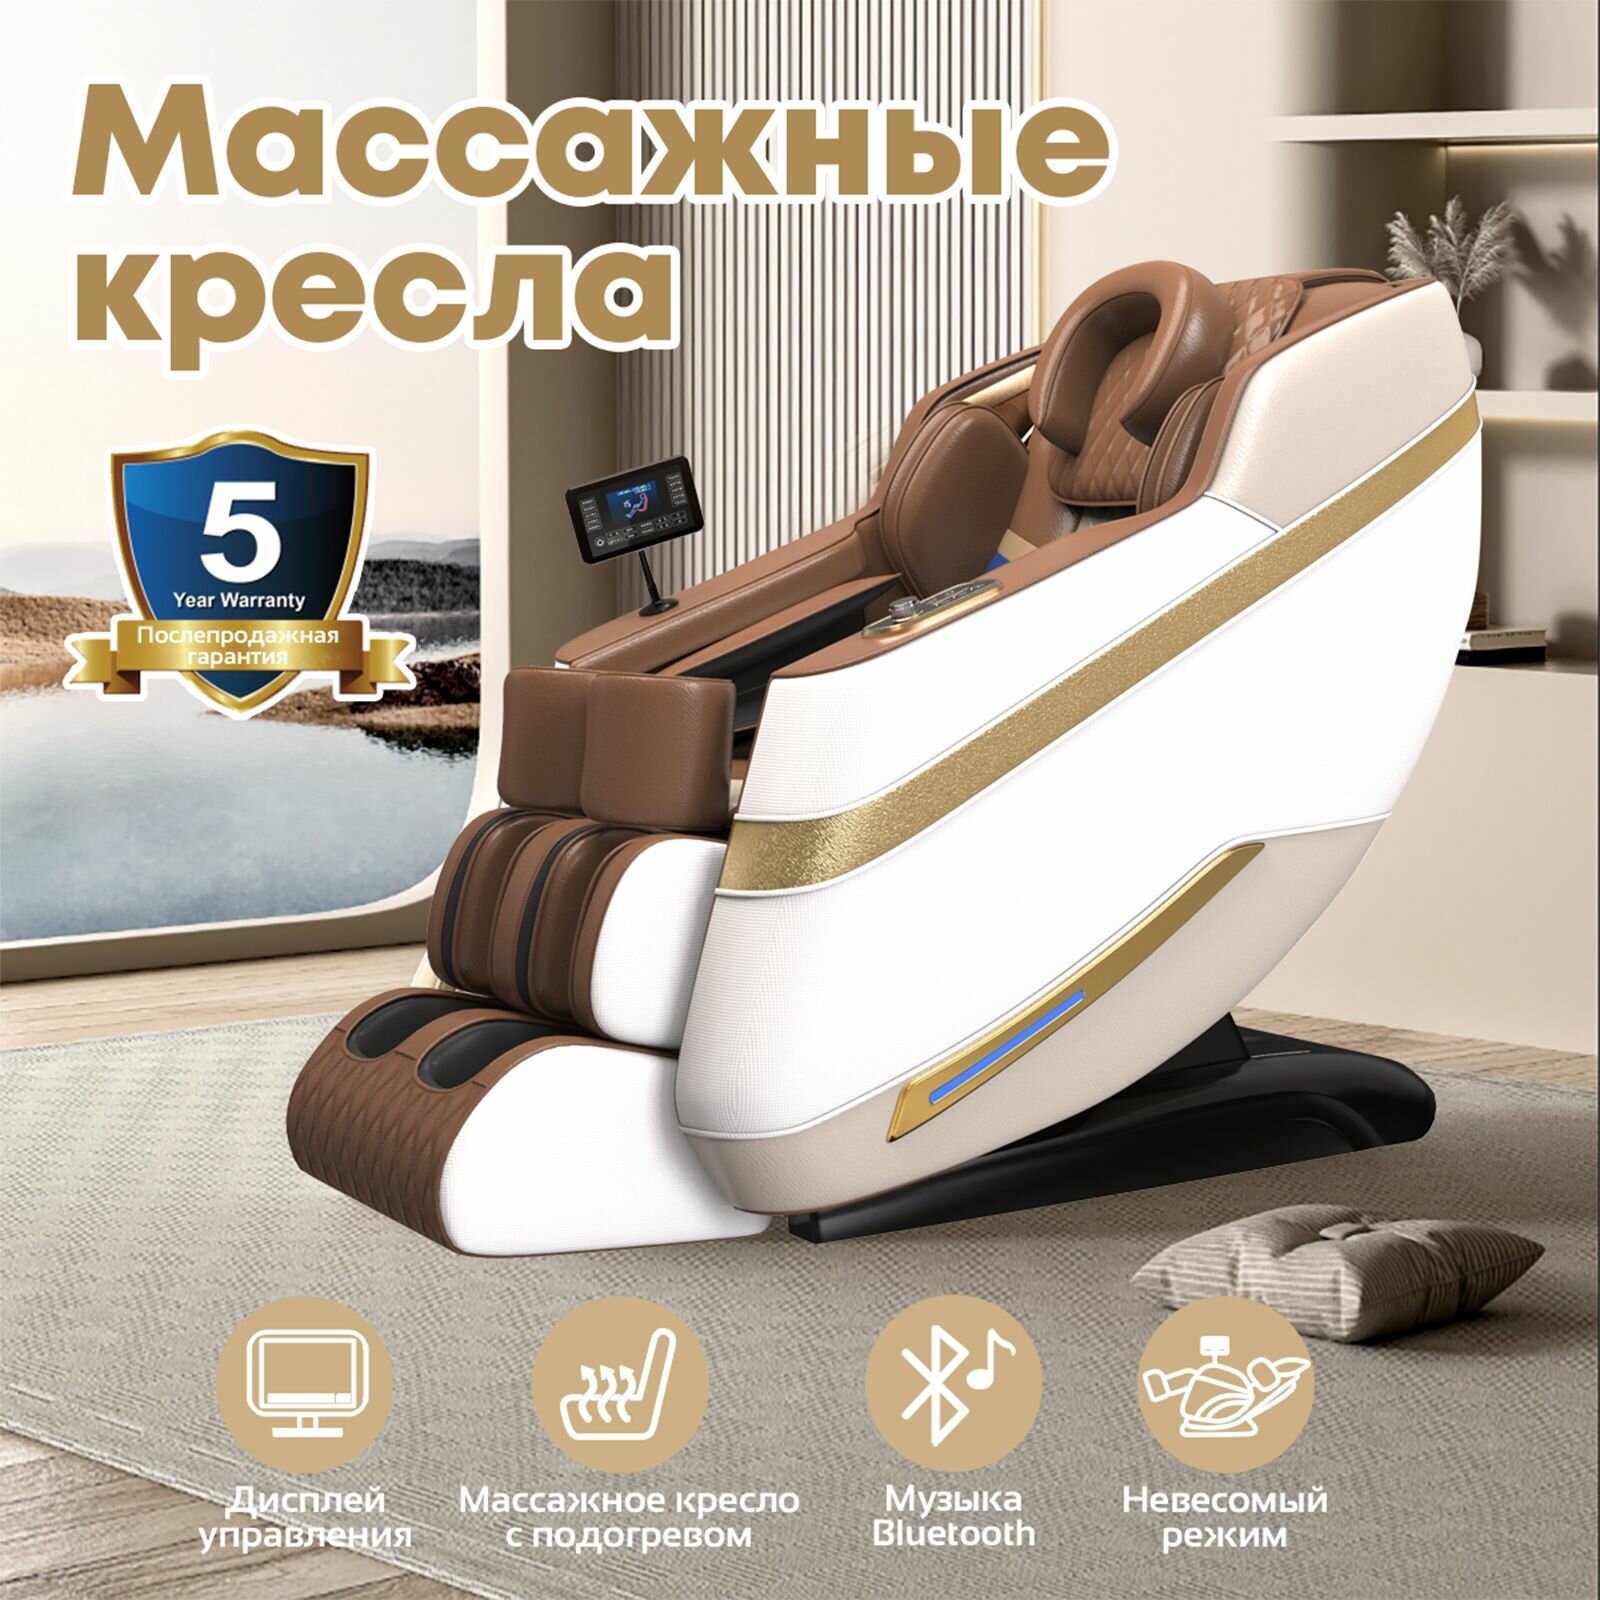 Массажное кресло электрический 106-K, Российский пульт дистанционного управления с большим экраном, подушка безопасности для всего тела, обогрев талии и обогрев ног